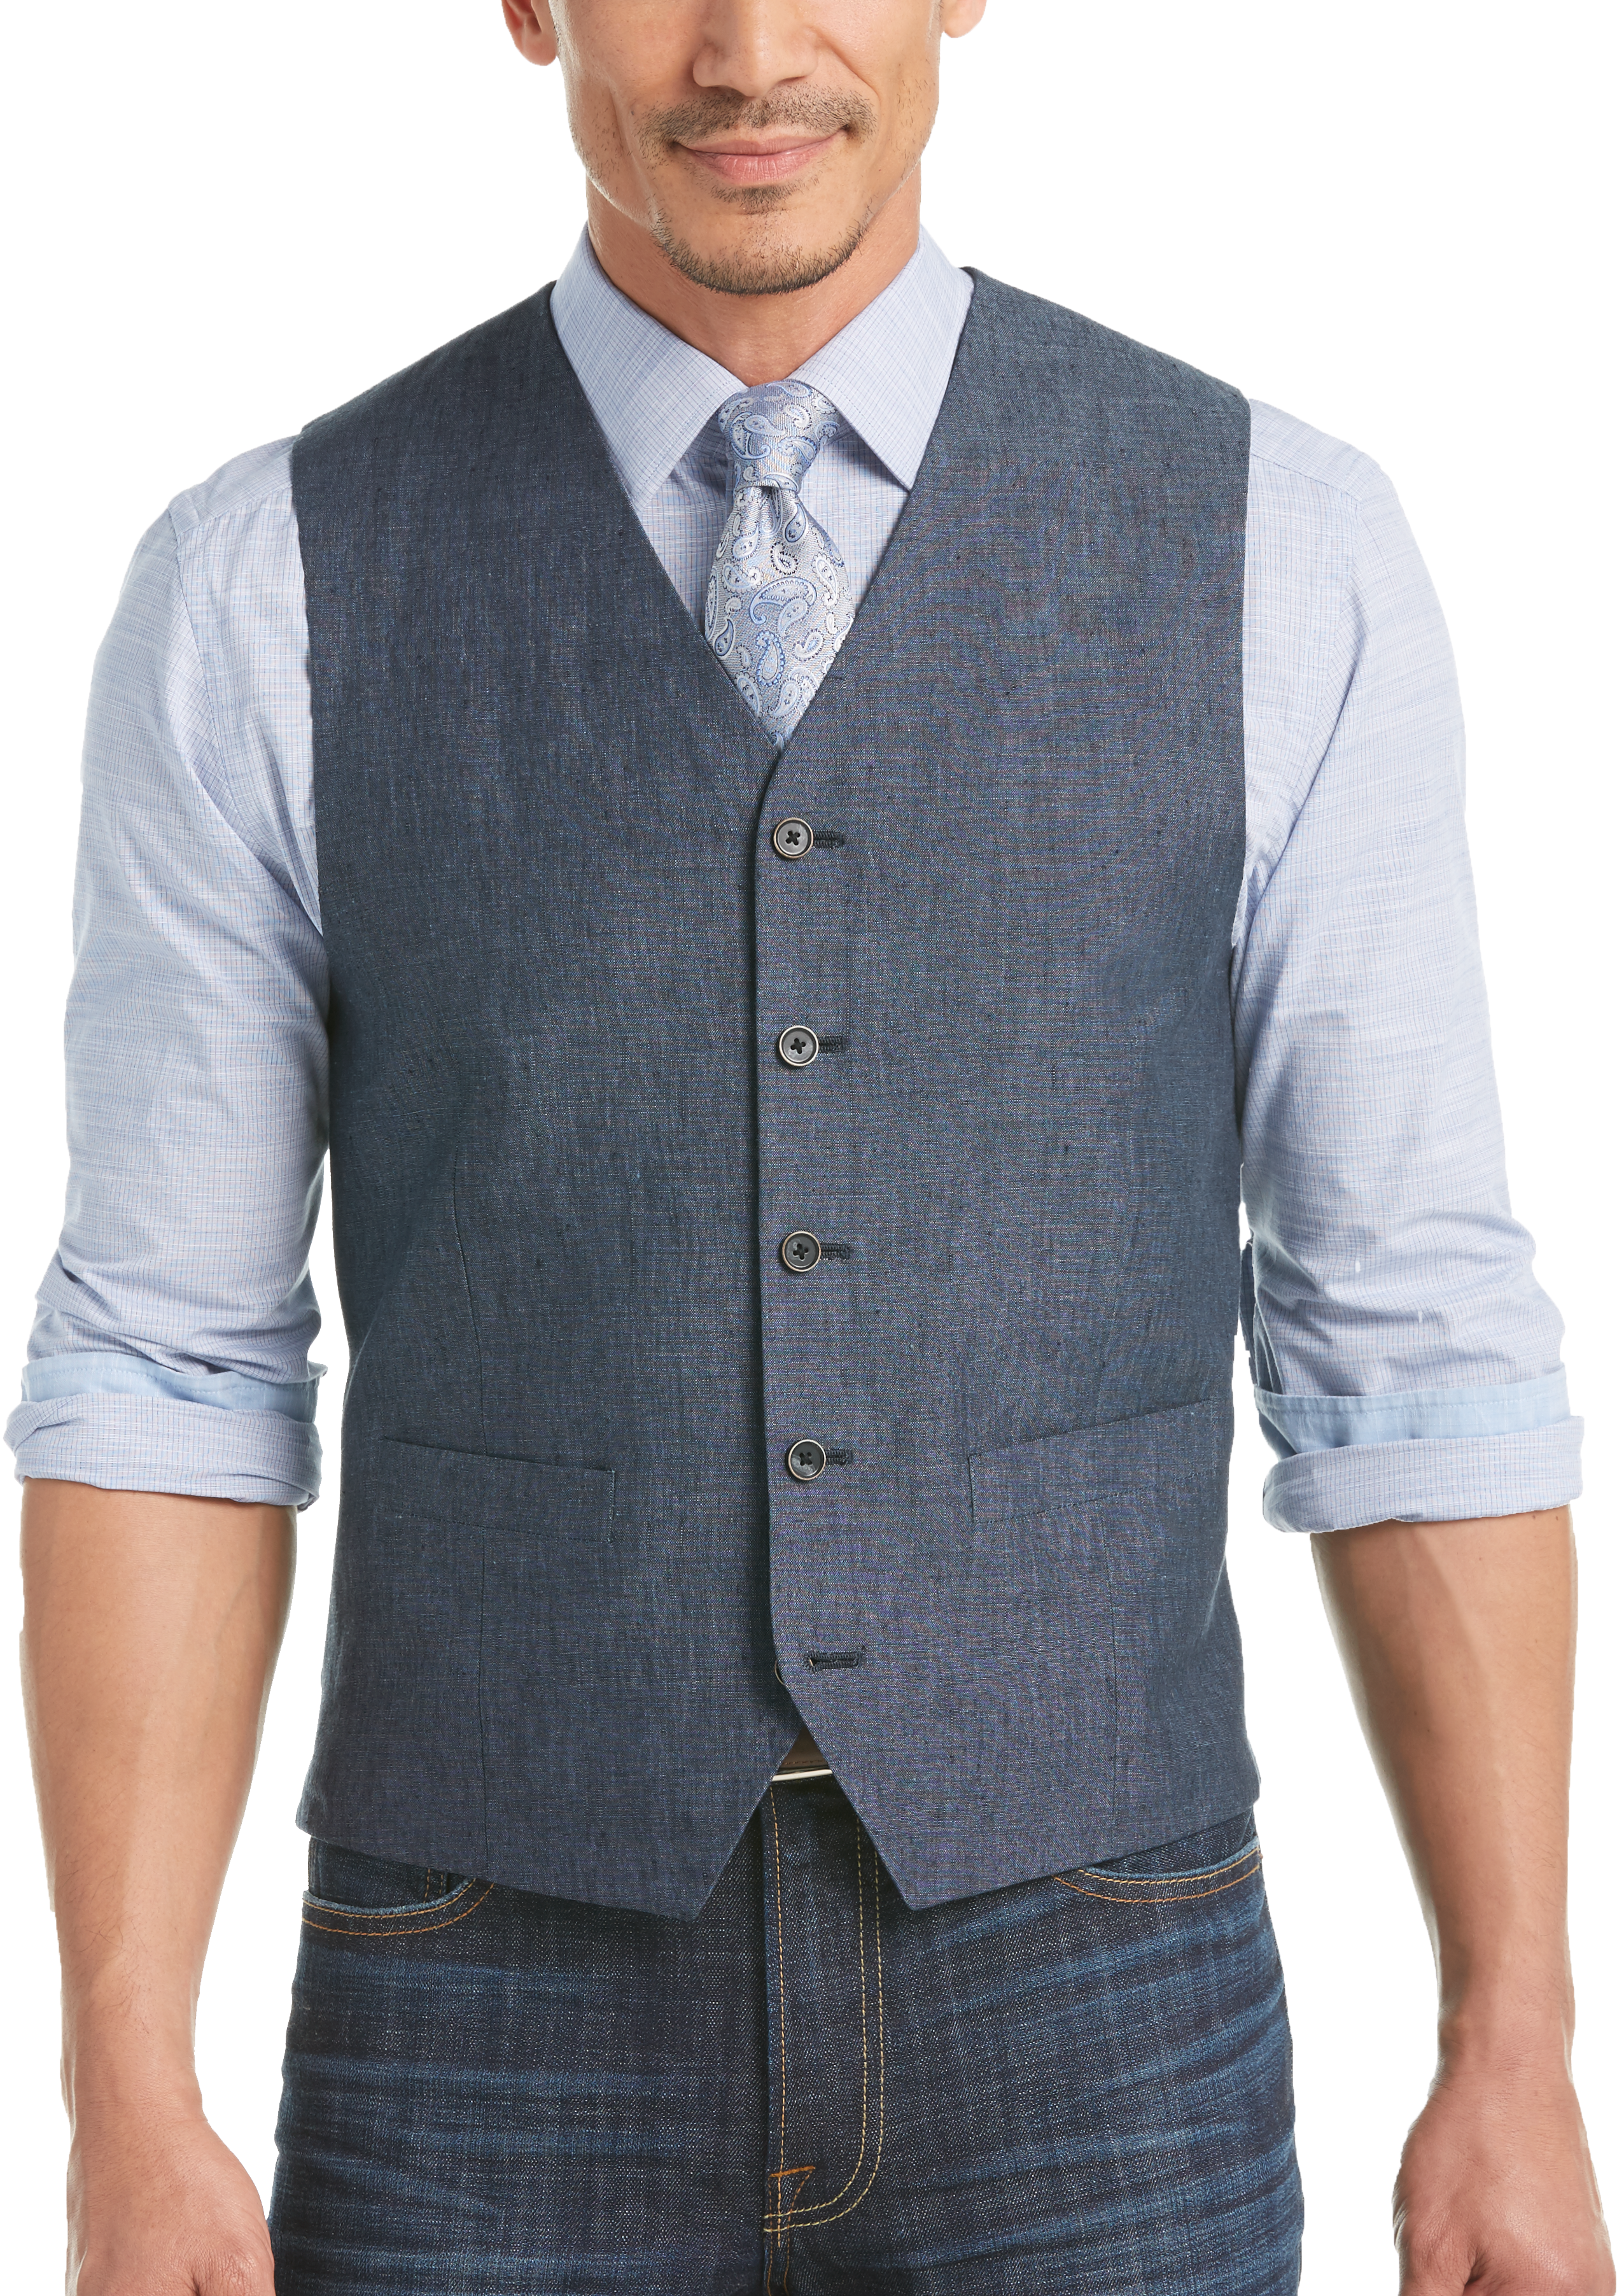 Joseph Abboud Indigo Blue Modern Fit Linen Vest - Men's Tailored Vests ...